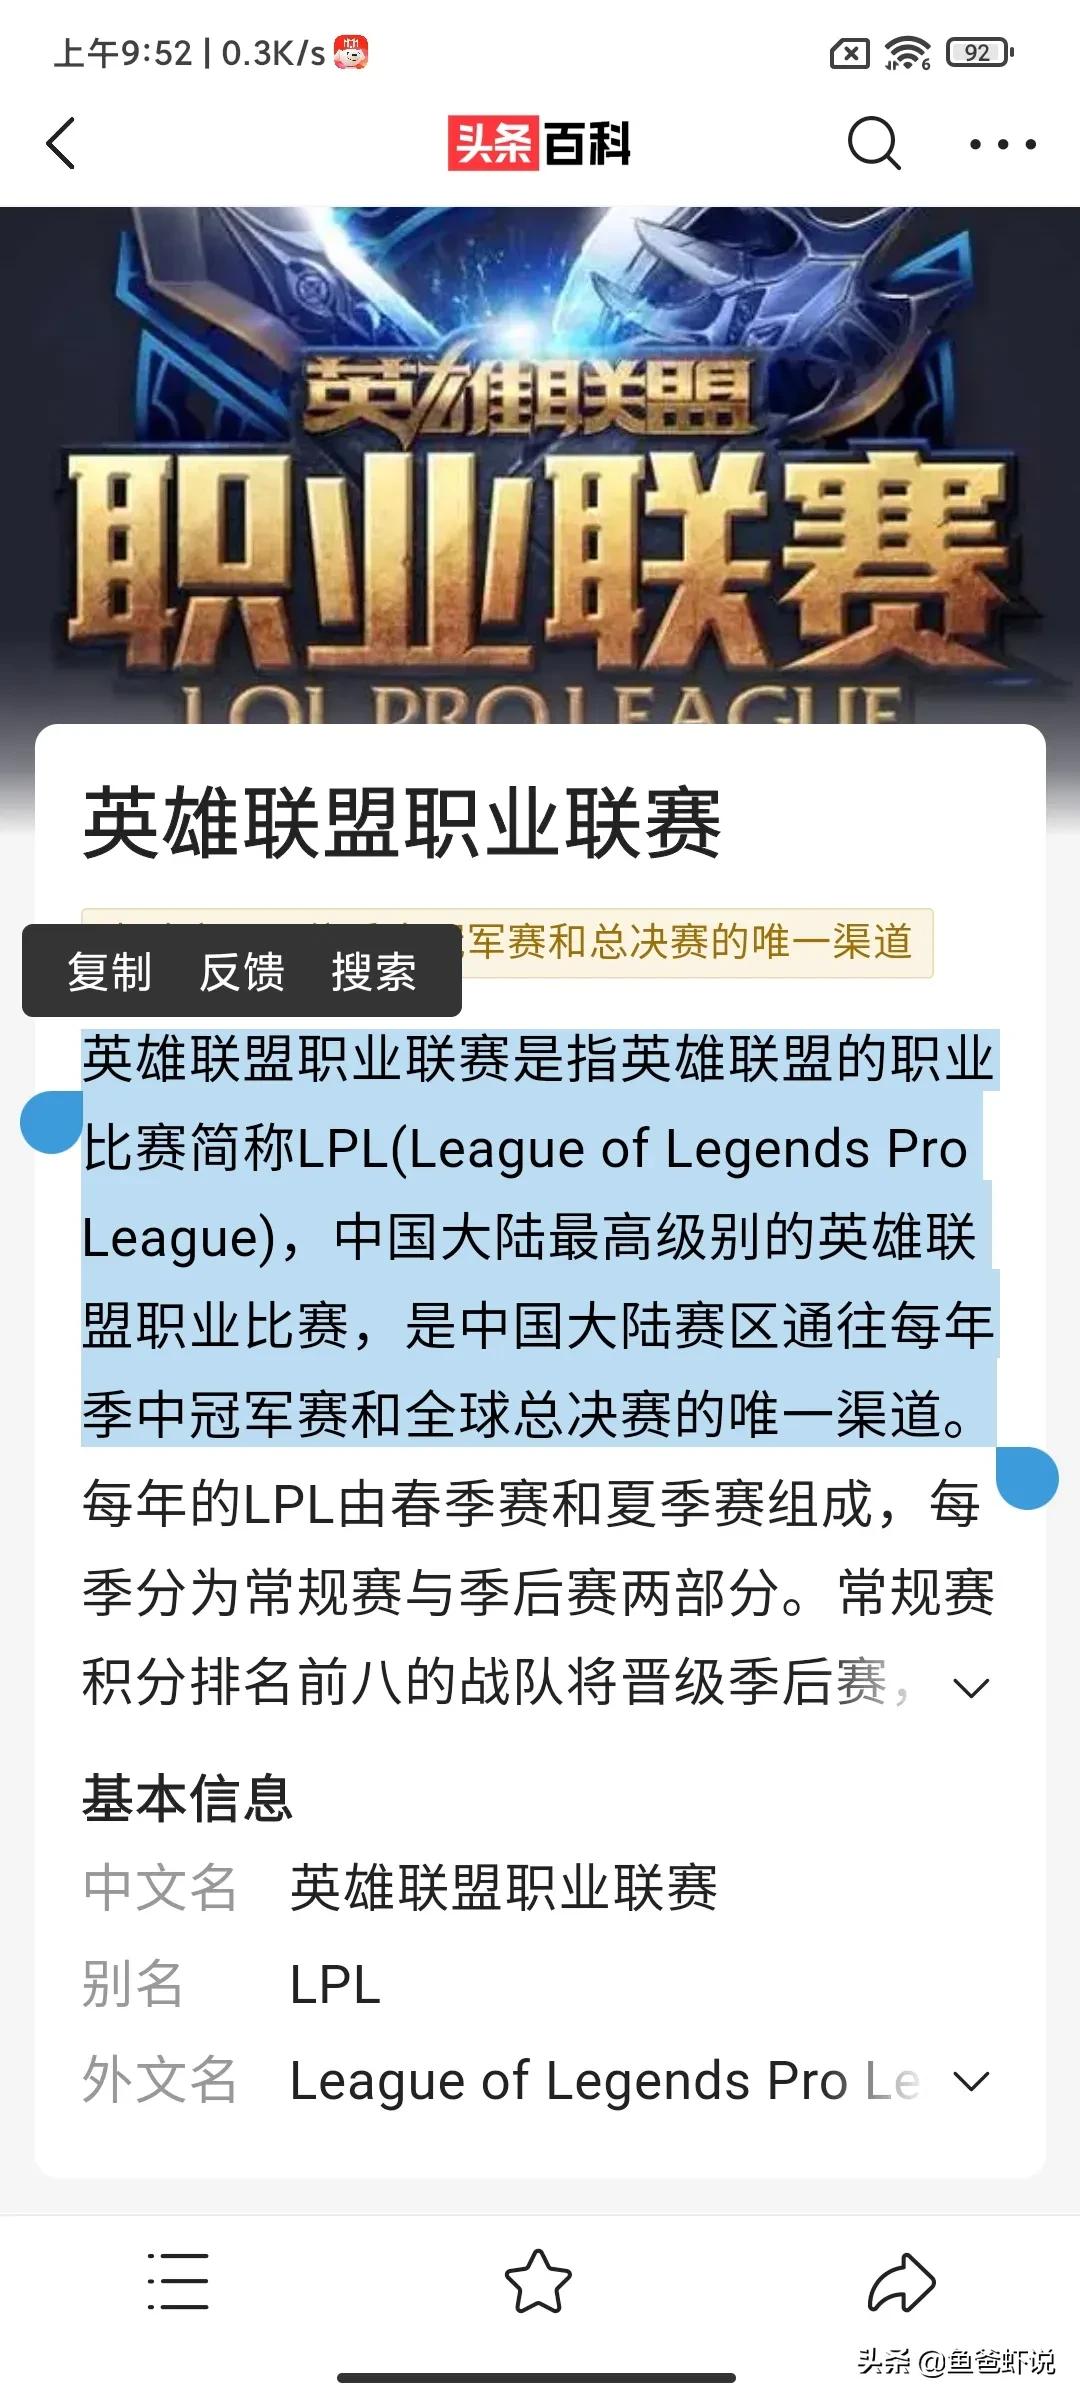 韩国为什么叫LCK而中国叫LPL,lck都是韩国人吗?